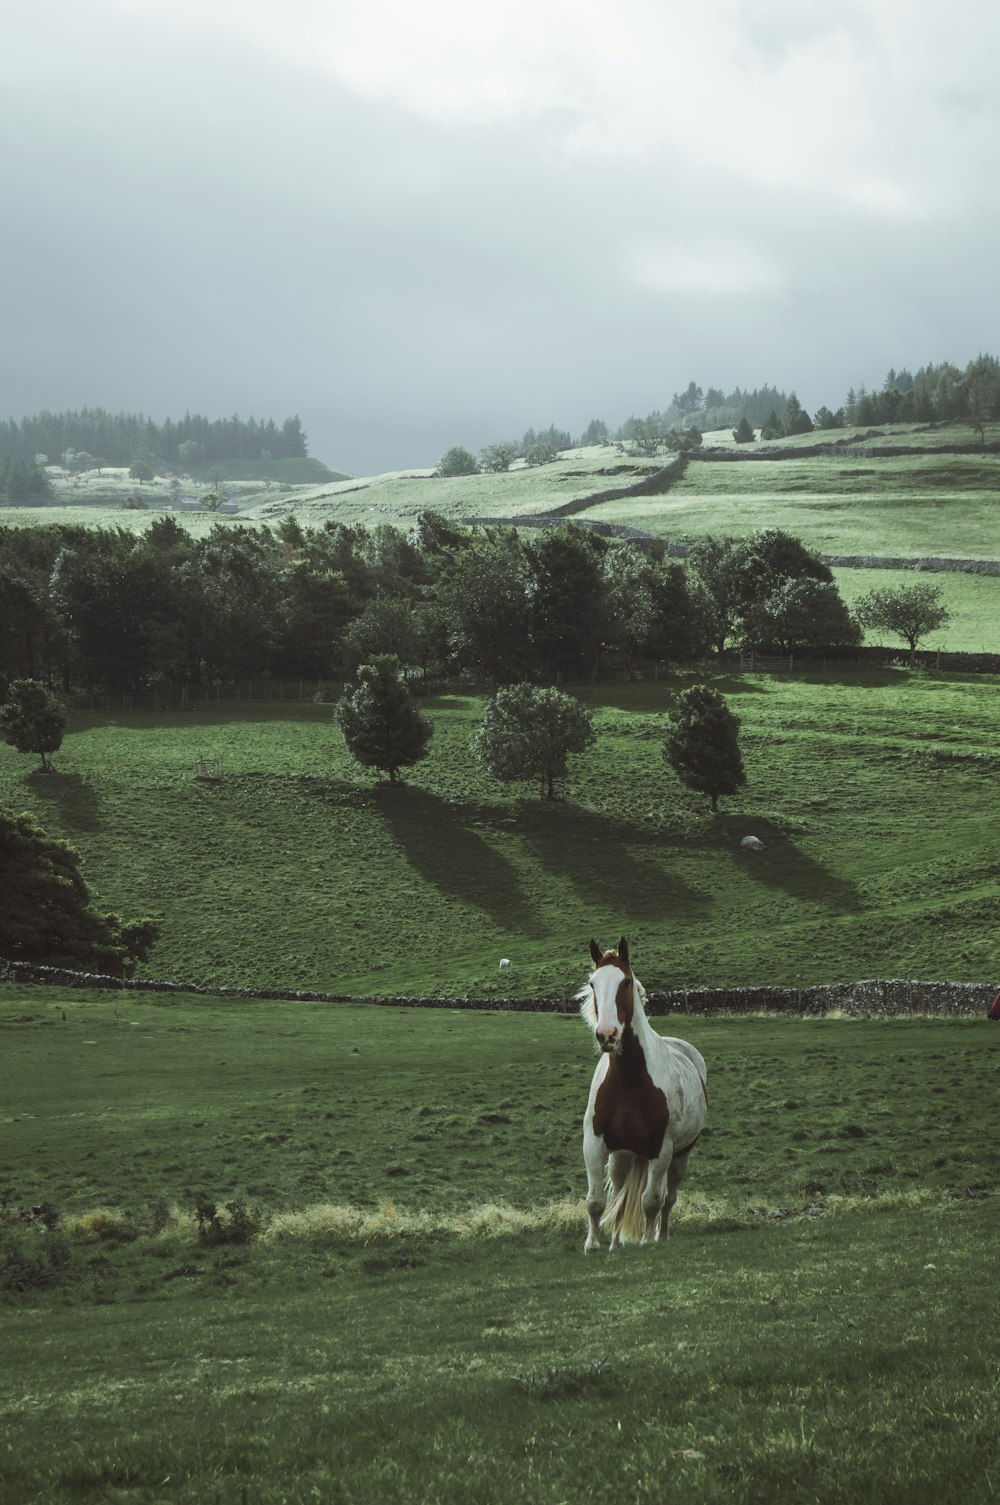 Ein braun-weißes Pferd steht auf einem üppigen grünen Feld